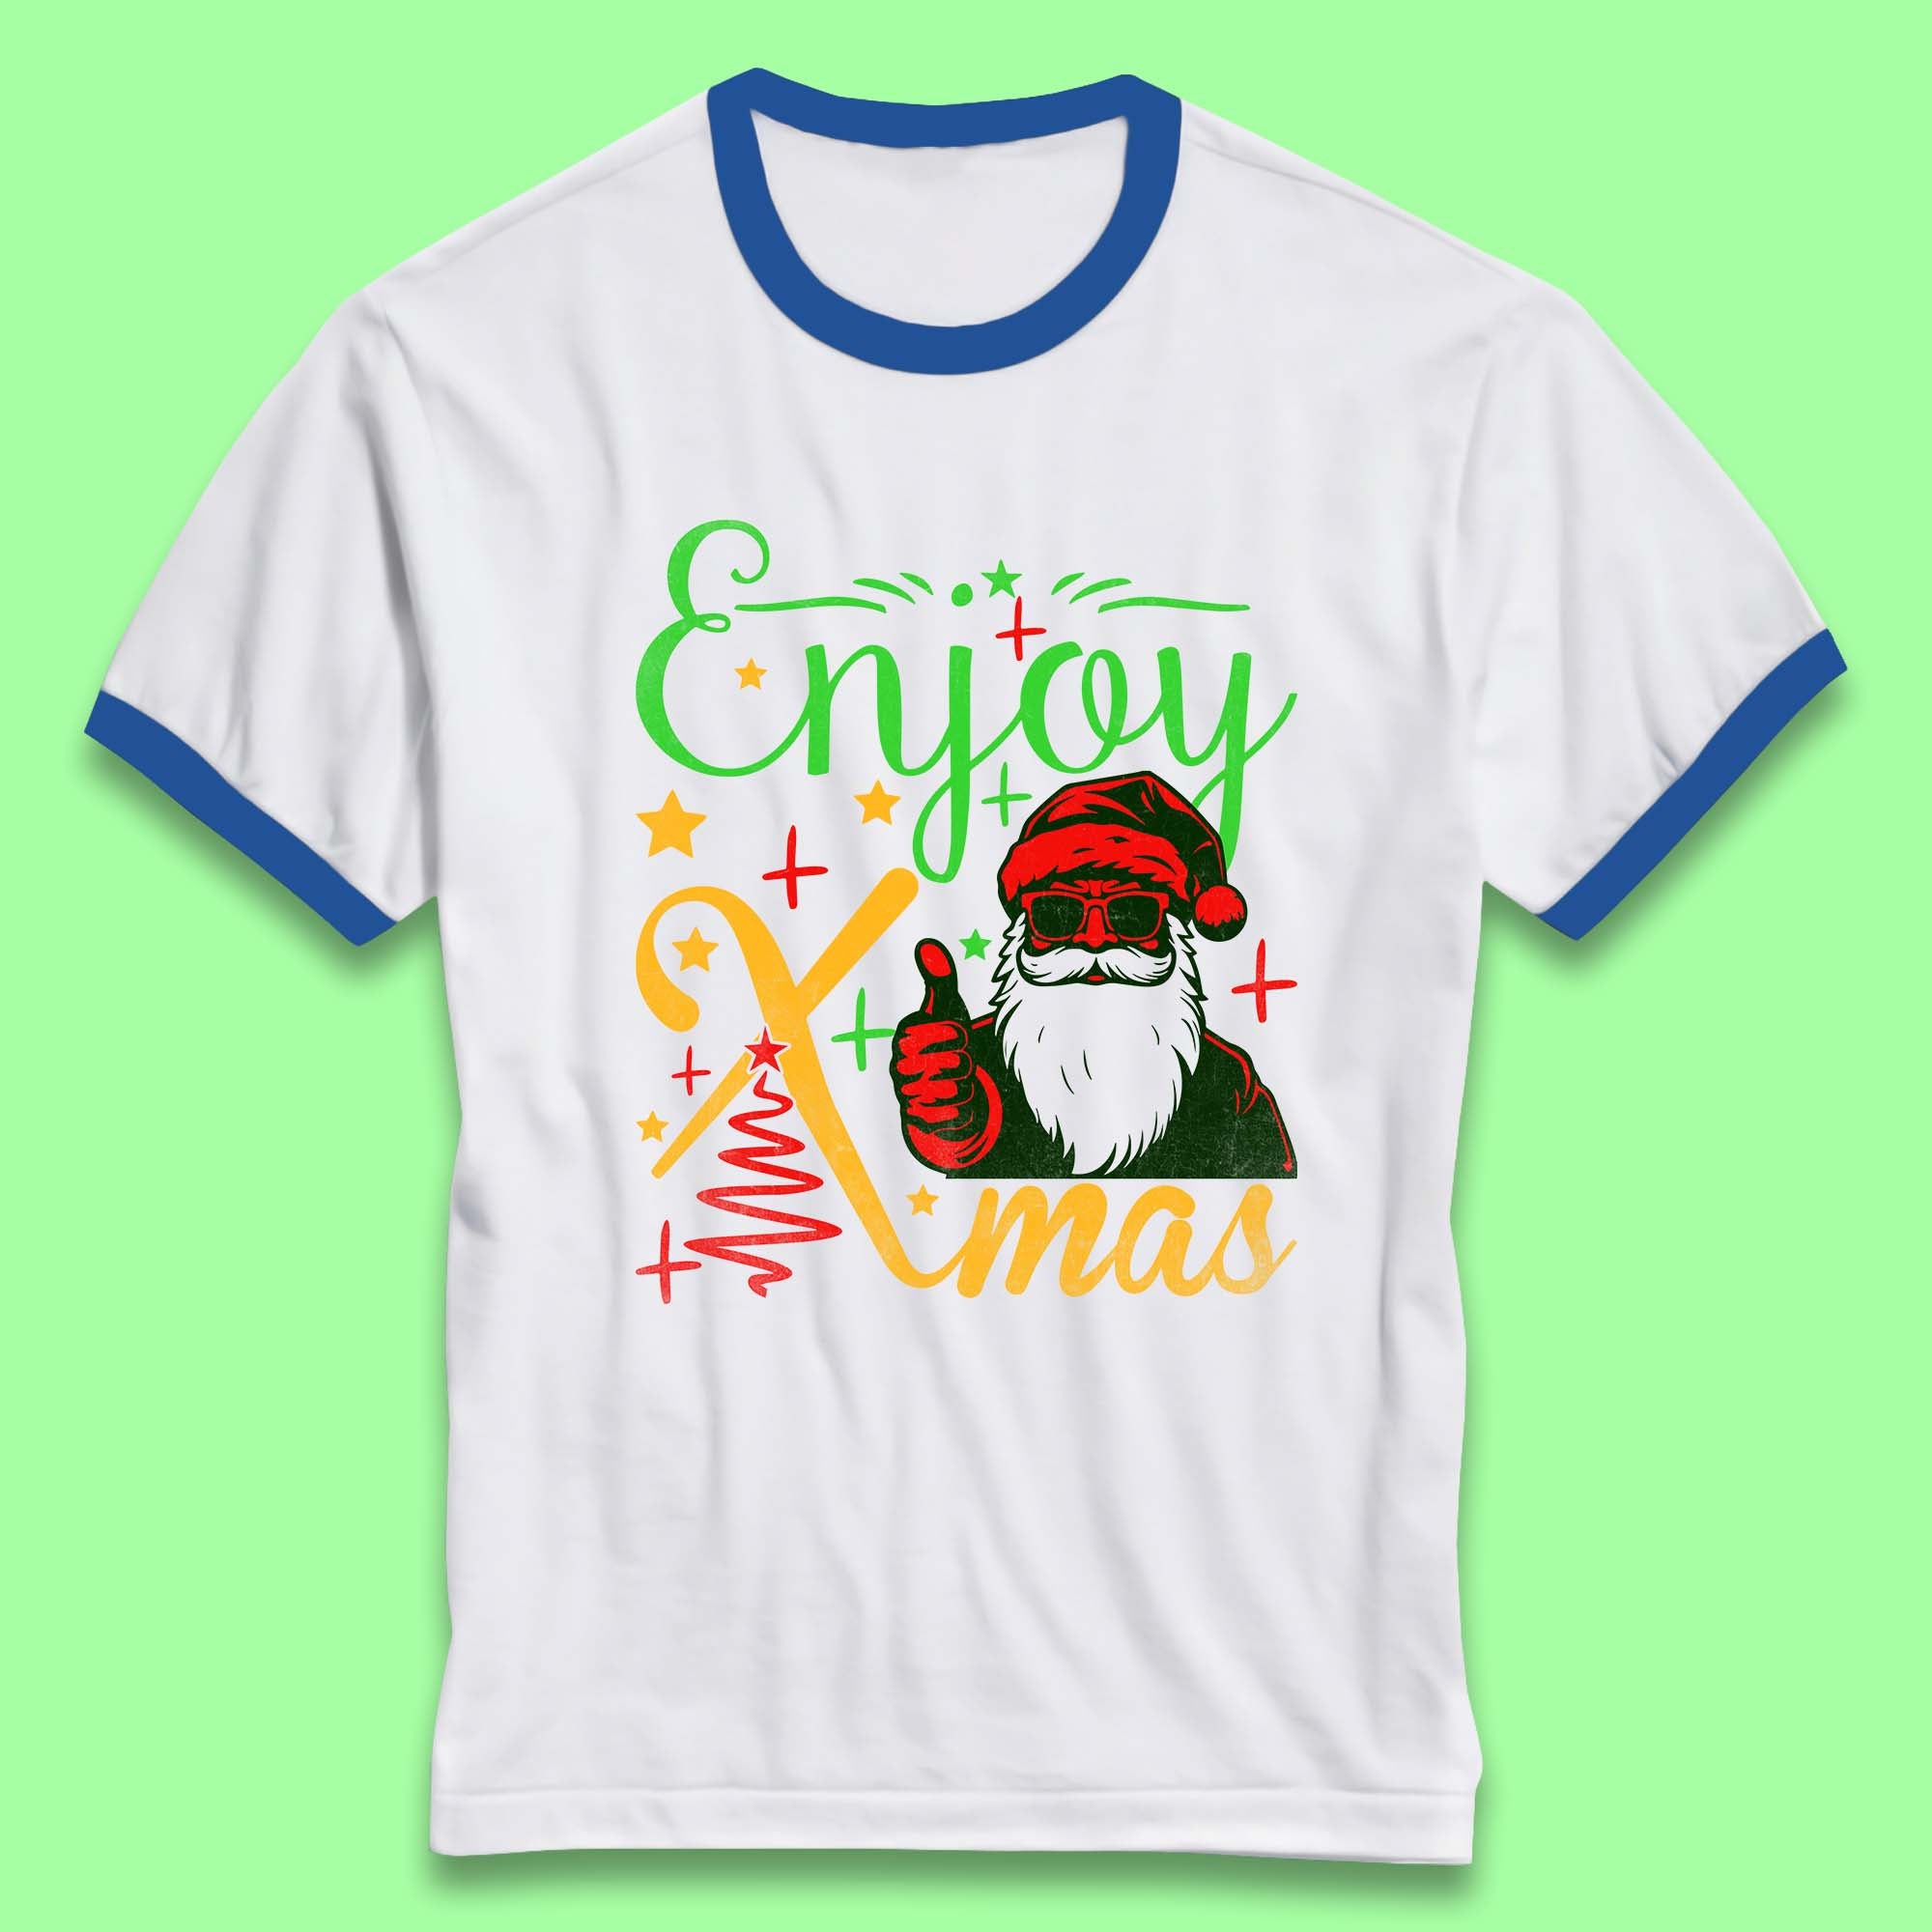 Enjoy Xmas Santa Claus Thumbs Up Merry Christmas Holiday Season Ringer T Shirt